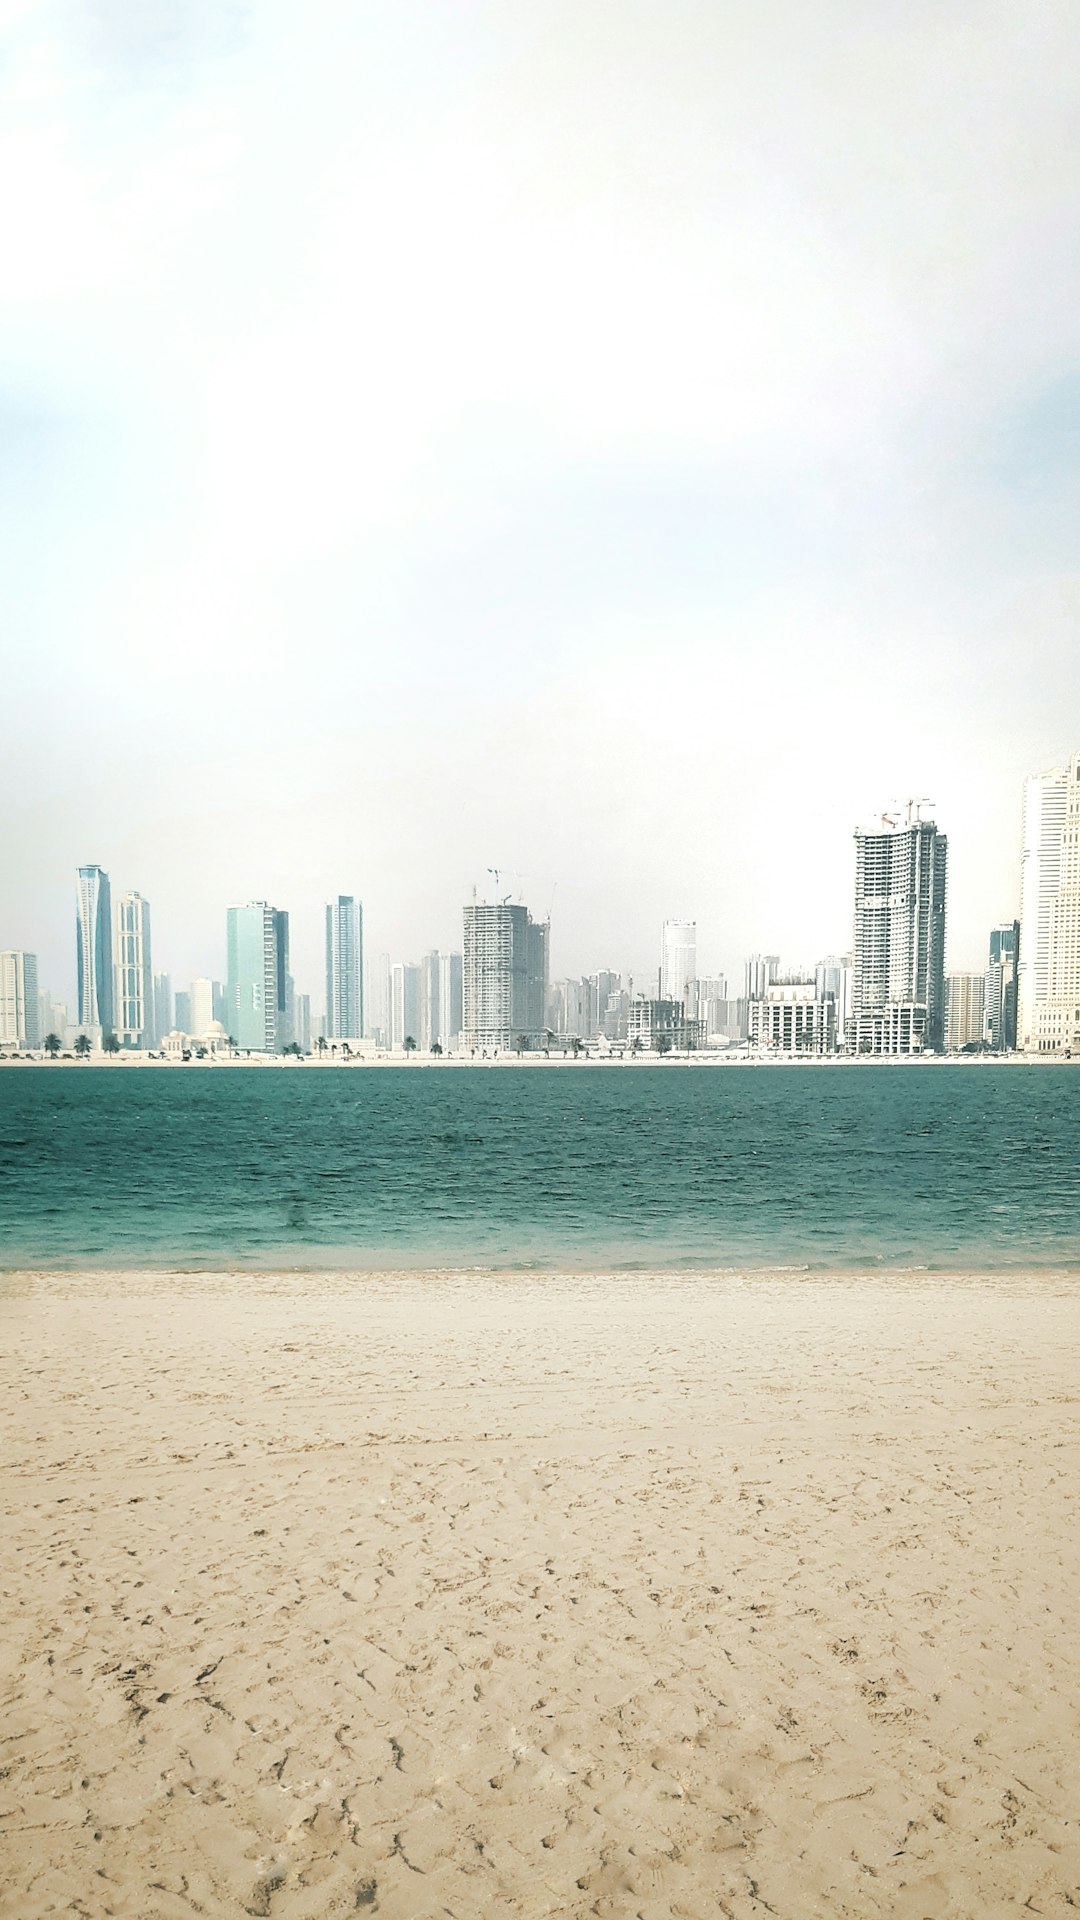 Beach photo spot Mamzar Beach - Dubai - United Arab Emirates Jumeirah